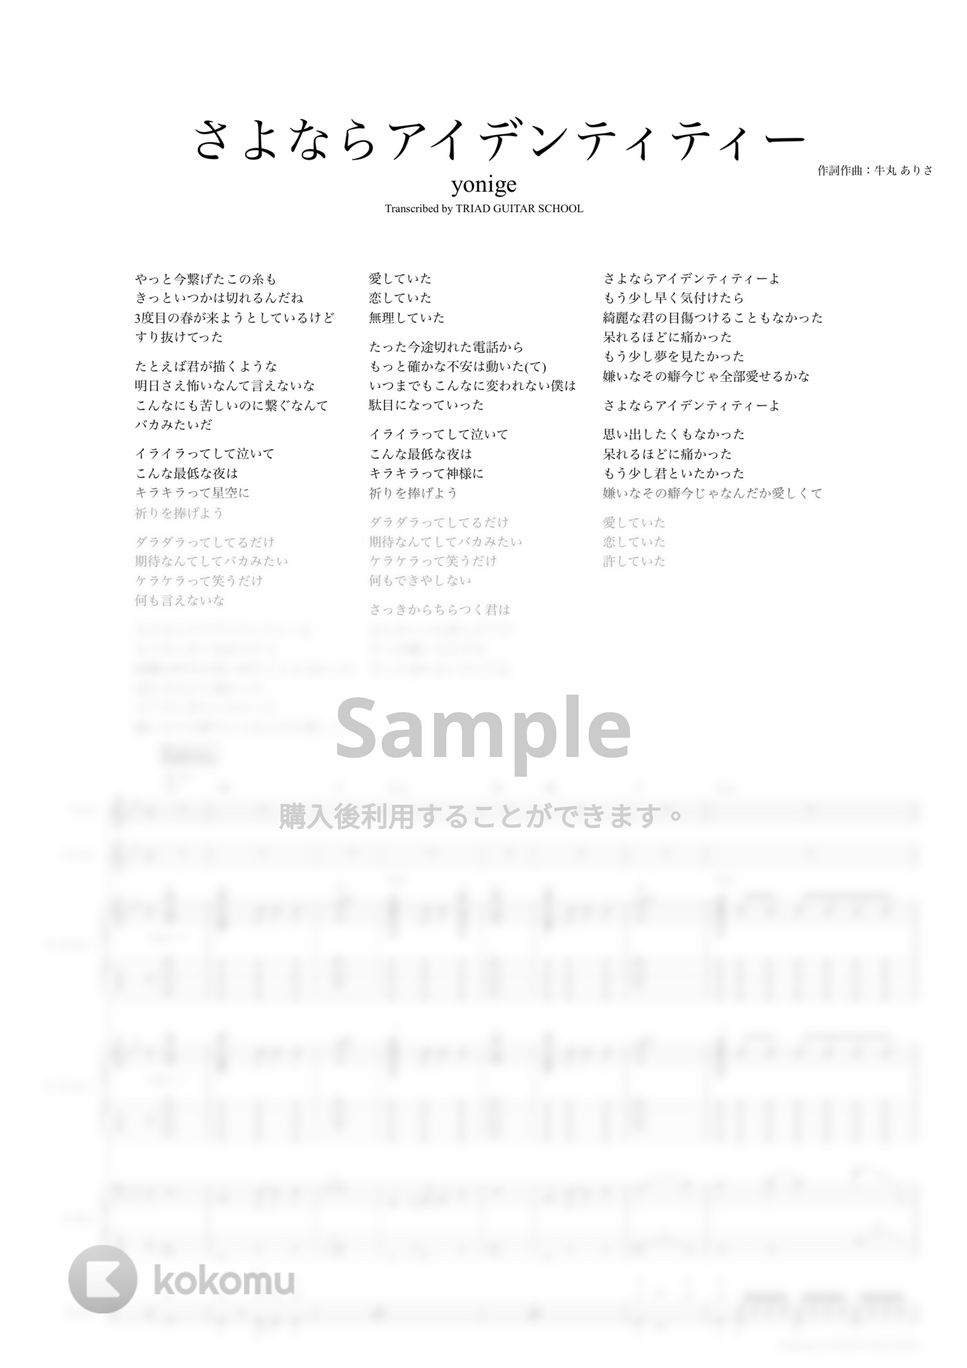 yonige - さよならアイデンティティー (バンドスコア) by TRIAD GUITAR SCHOOL